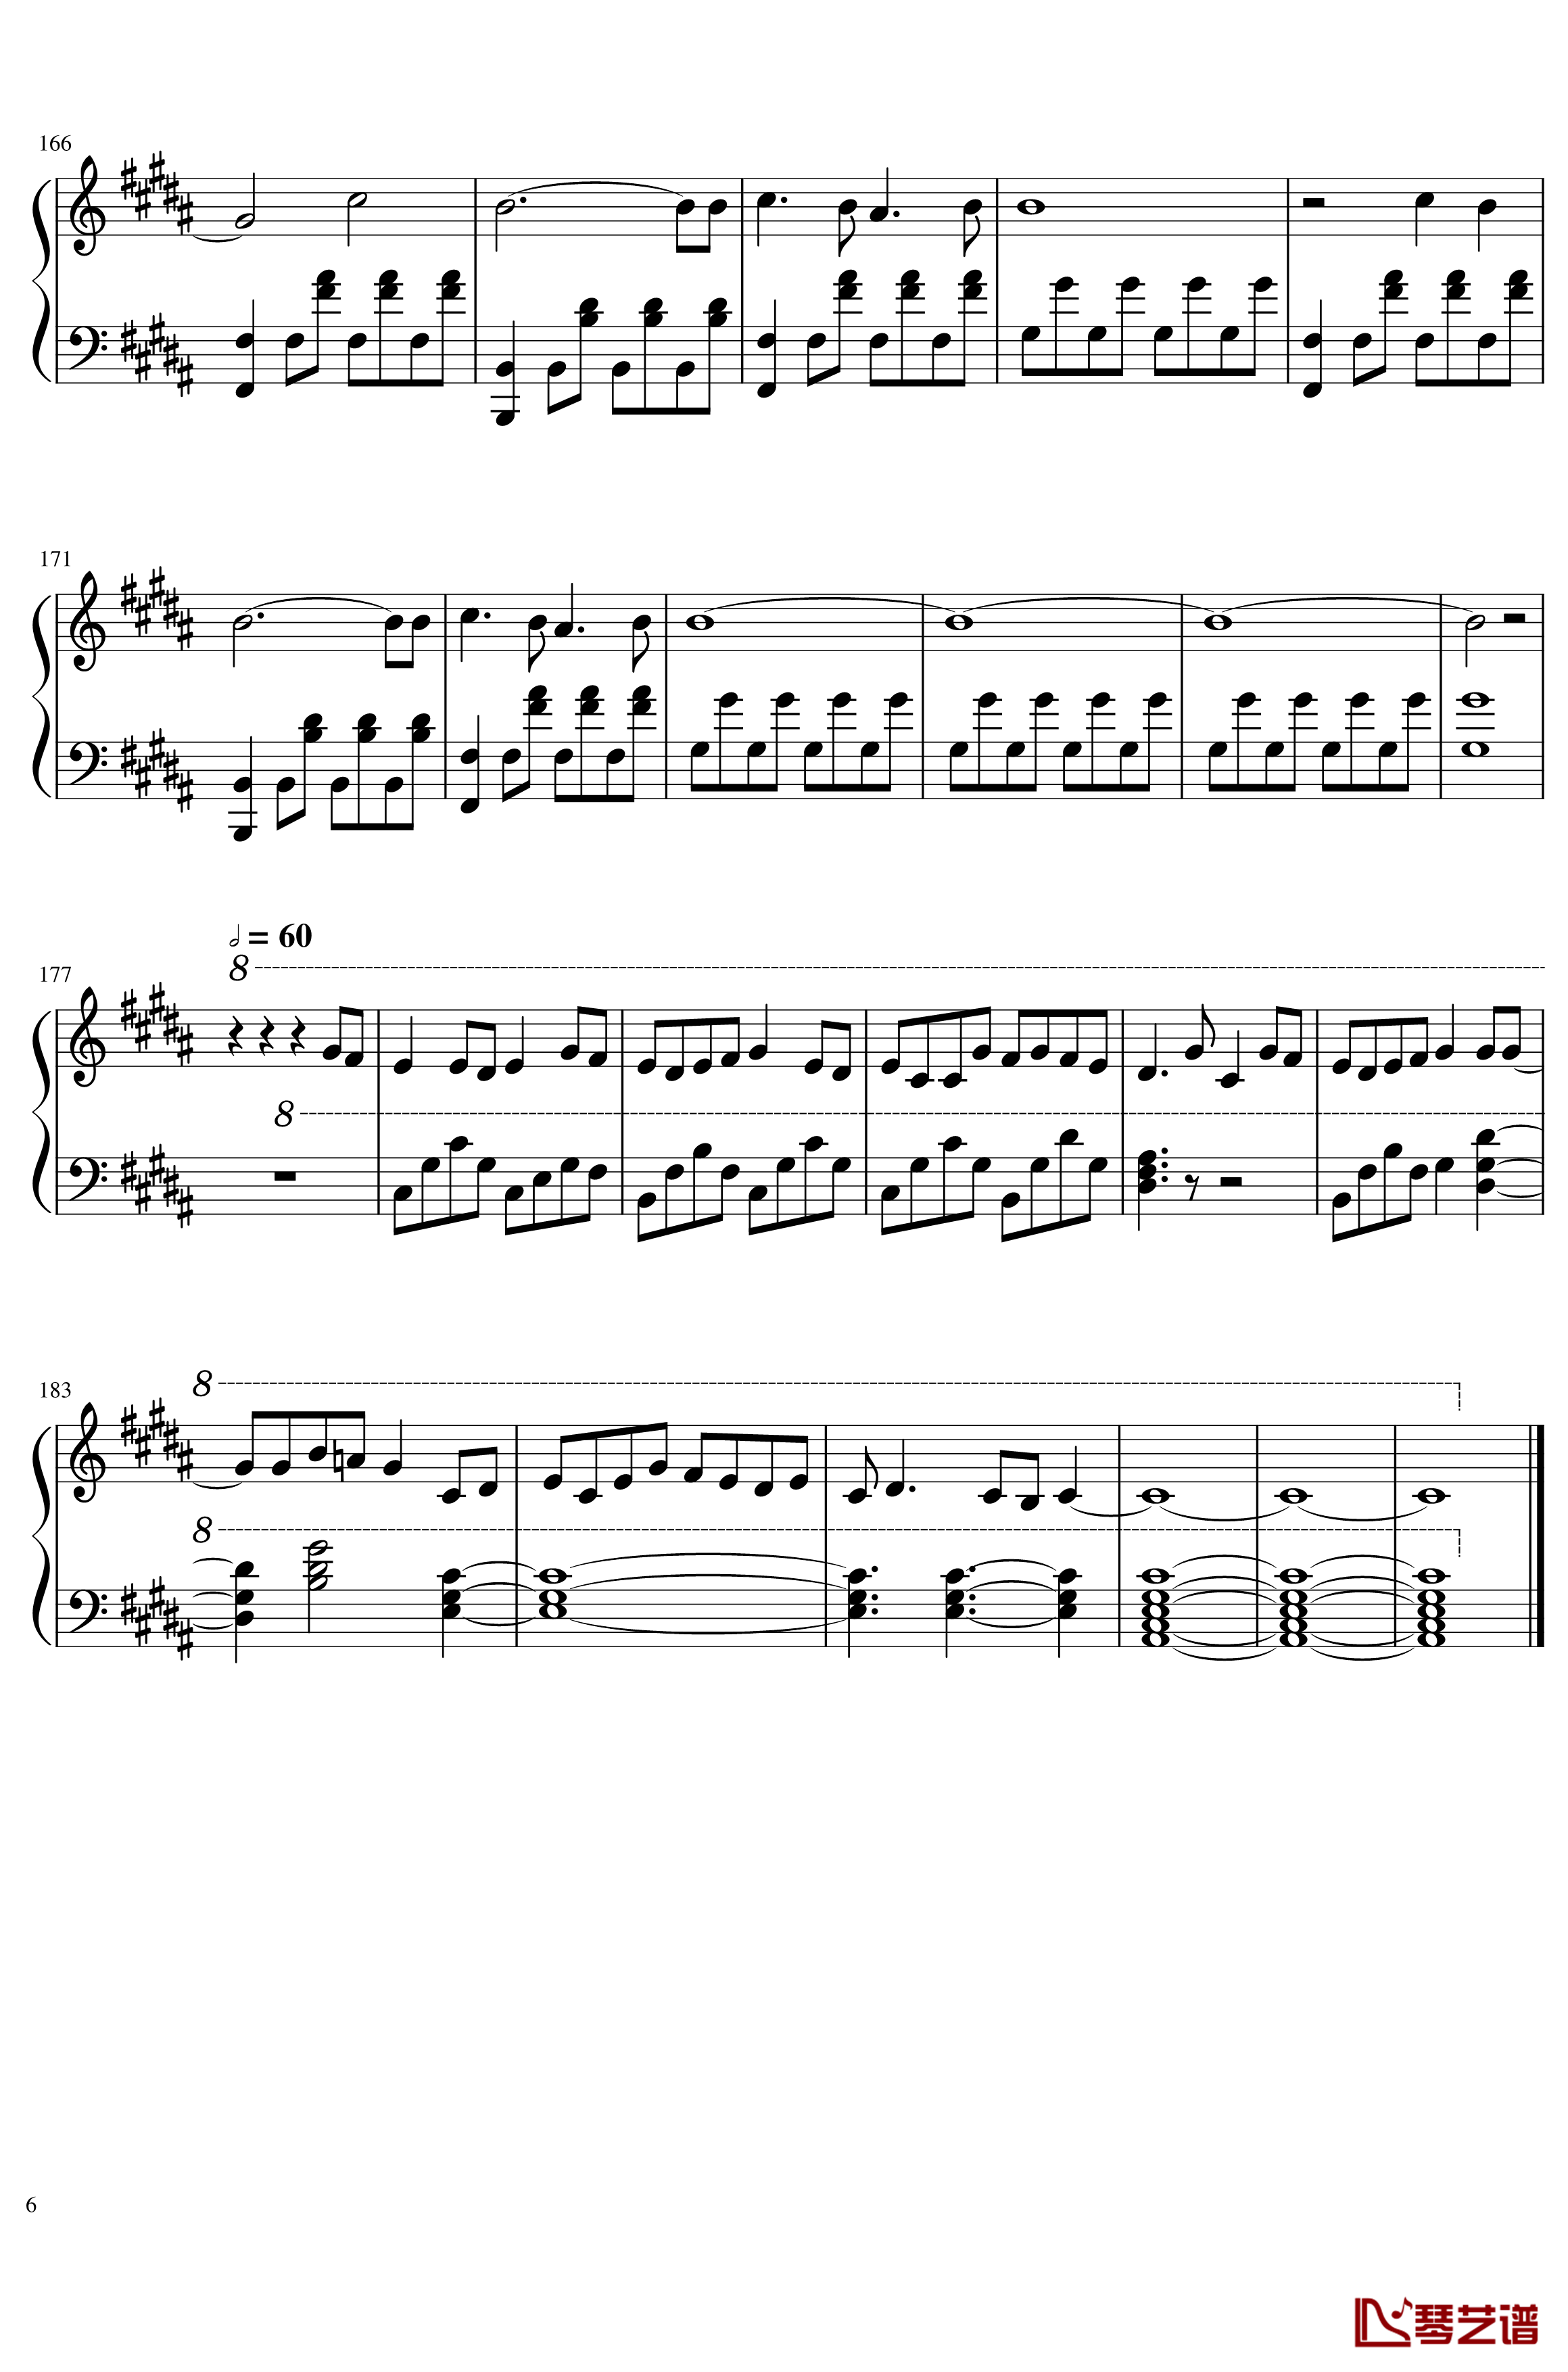 月和花束钢琴谱-fate extra6